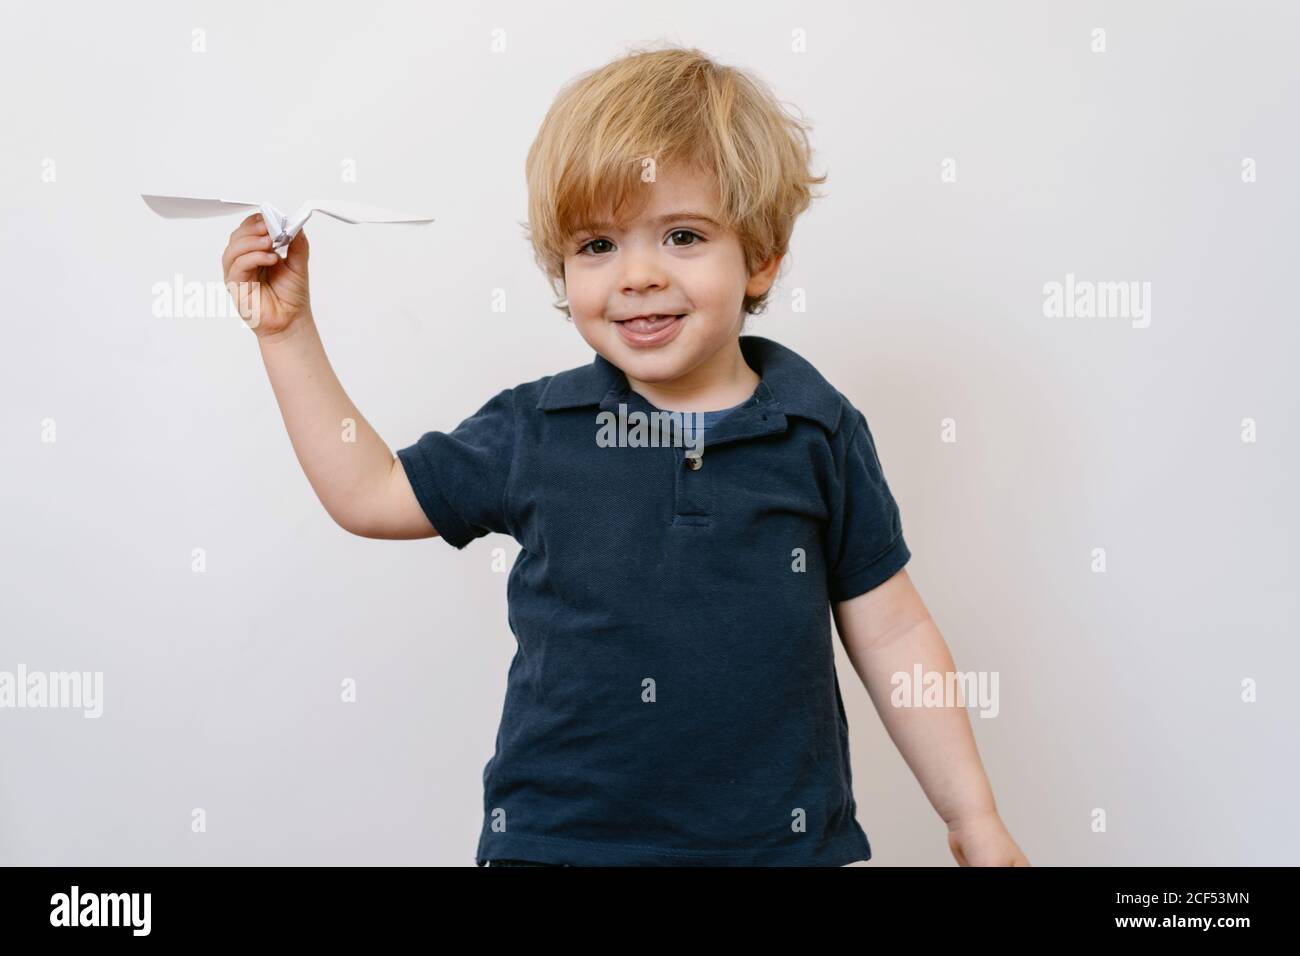 Joli garçon blond dans un ensemble décontracté jouant avec un rabot en papier sourire éclatant à l'appareil photo sur fond de mur blanc Banque D'Images